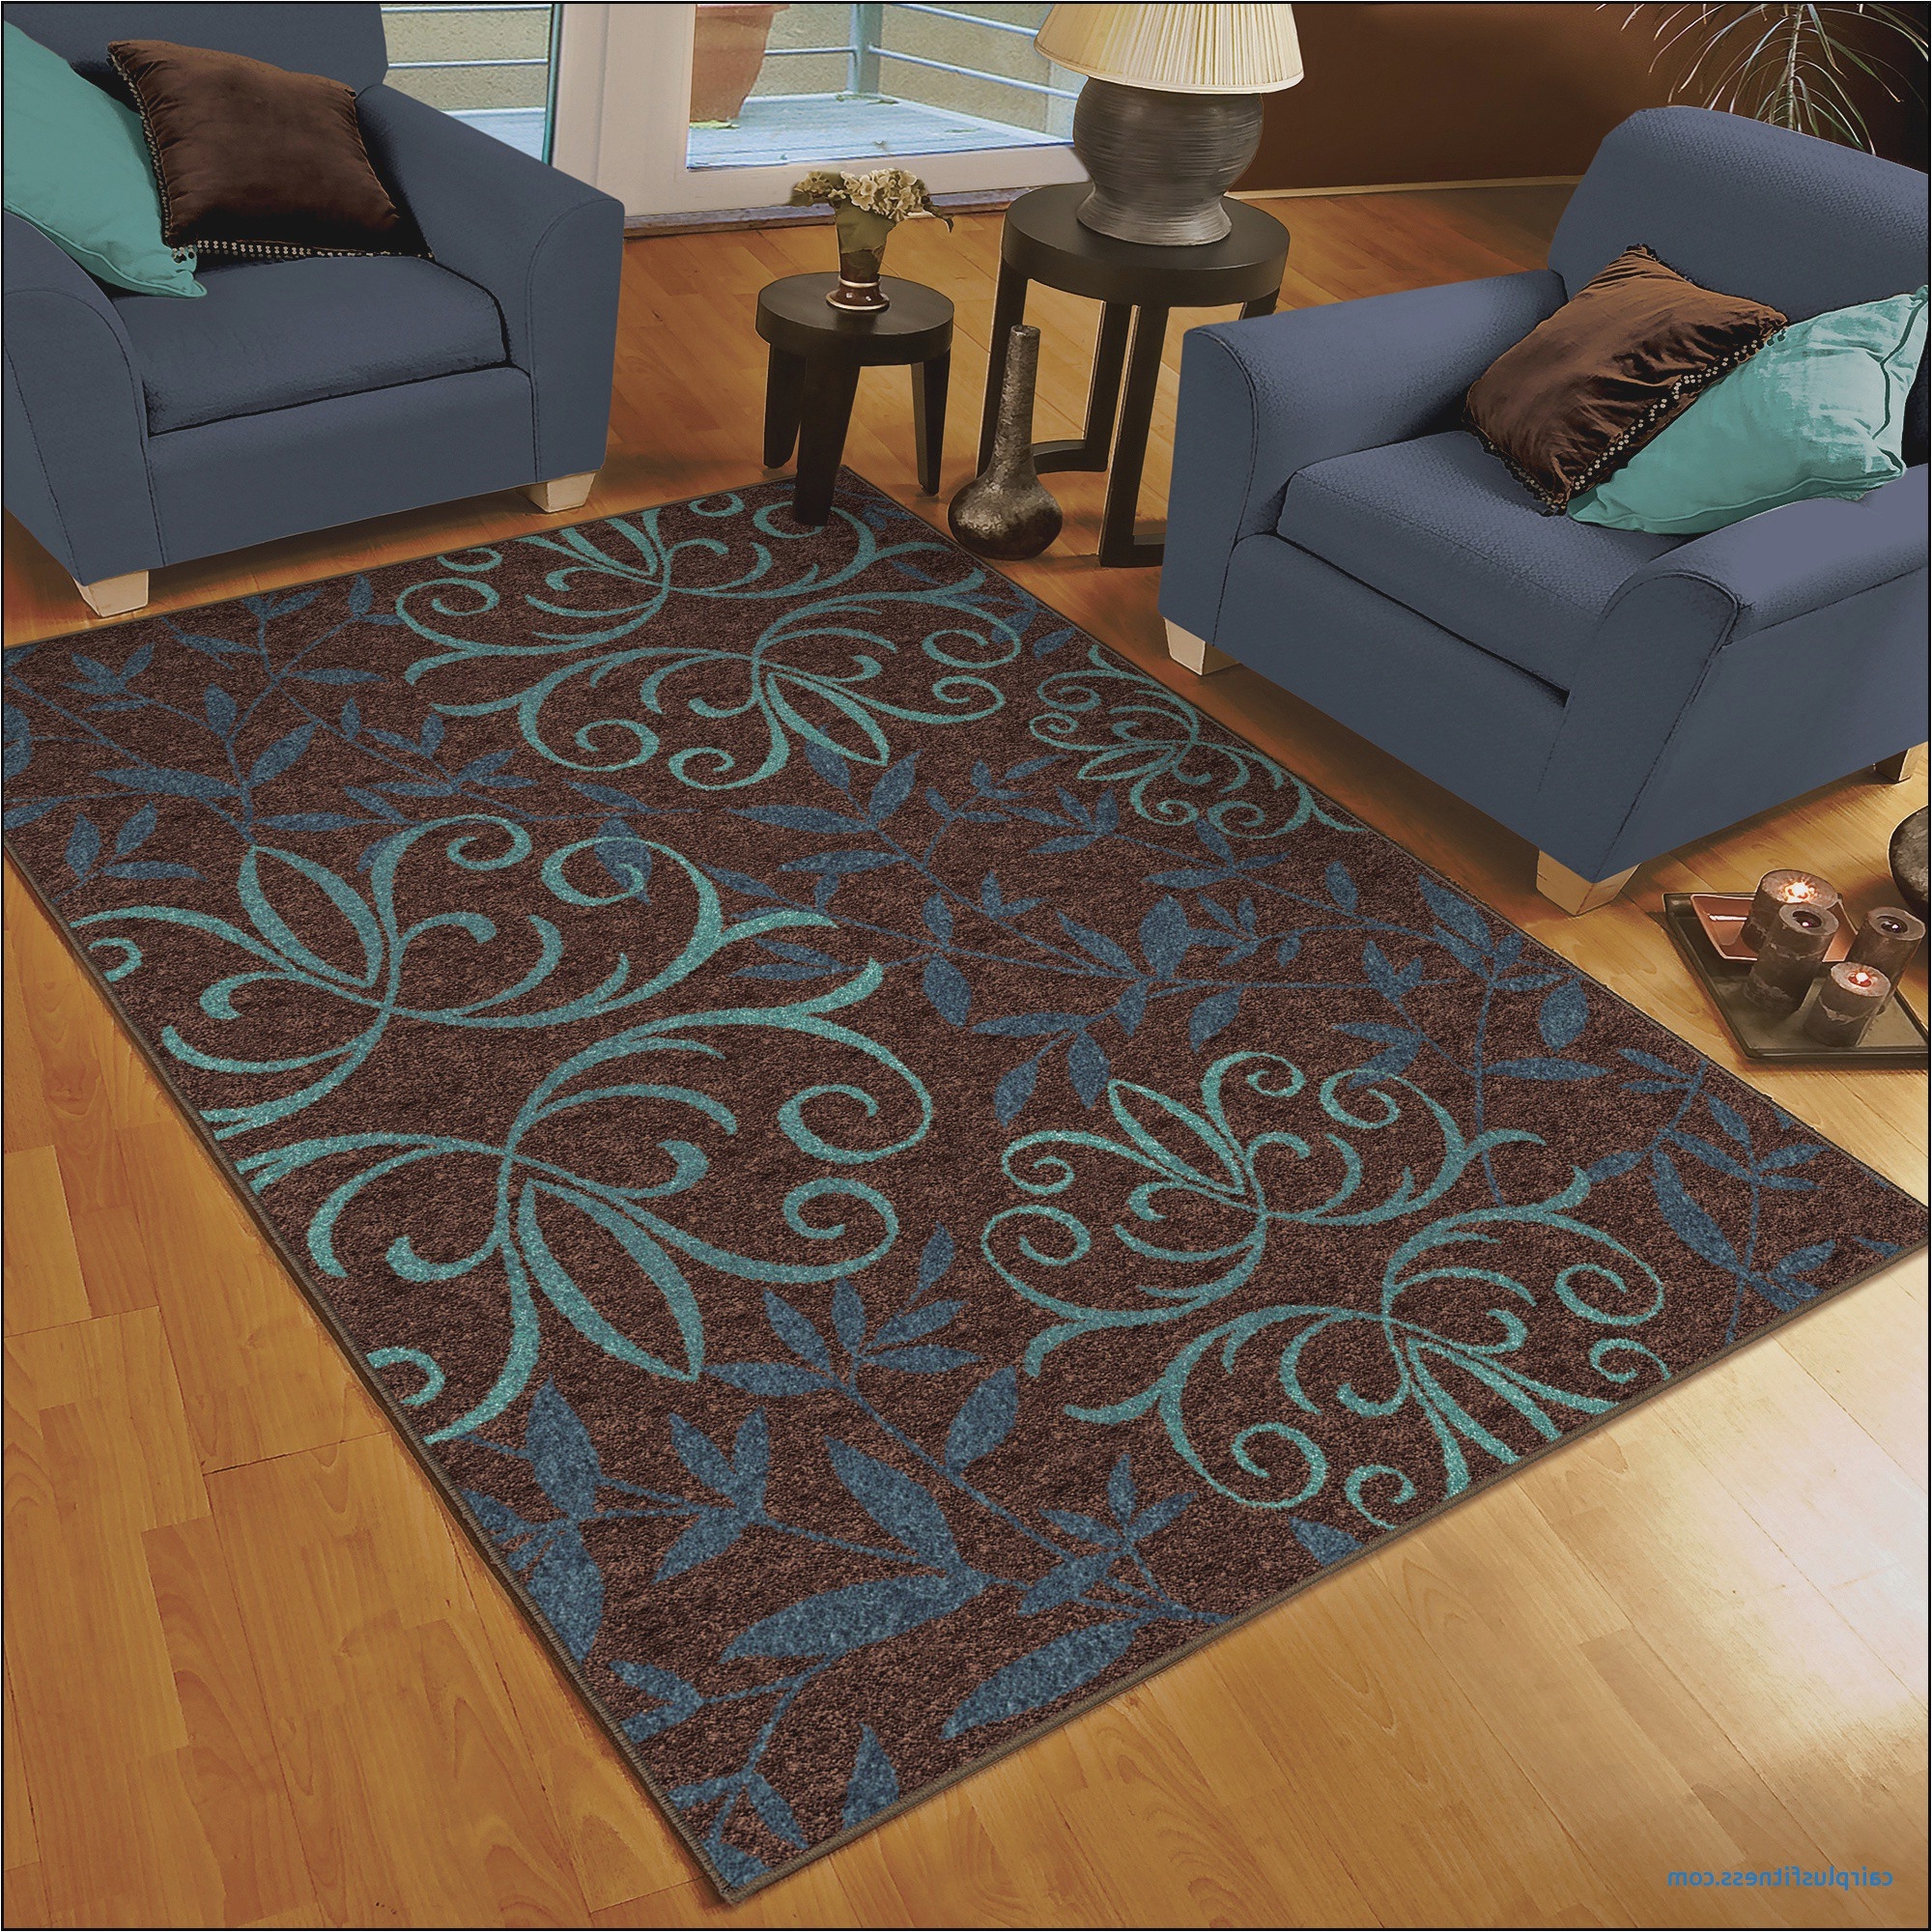 living room grey area rug walmart beautiful elegant outdoor area rugs walmart outdoor